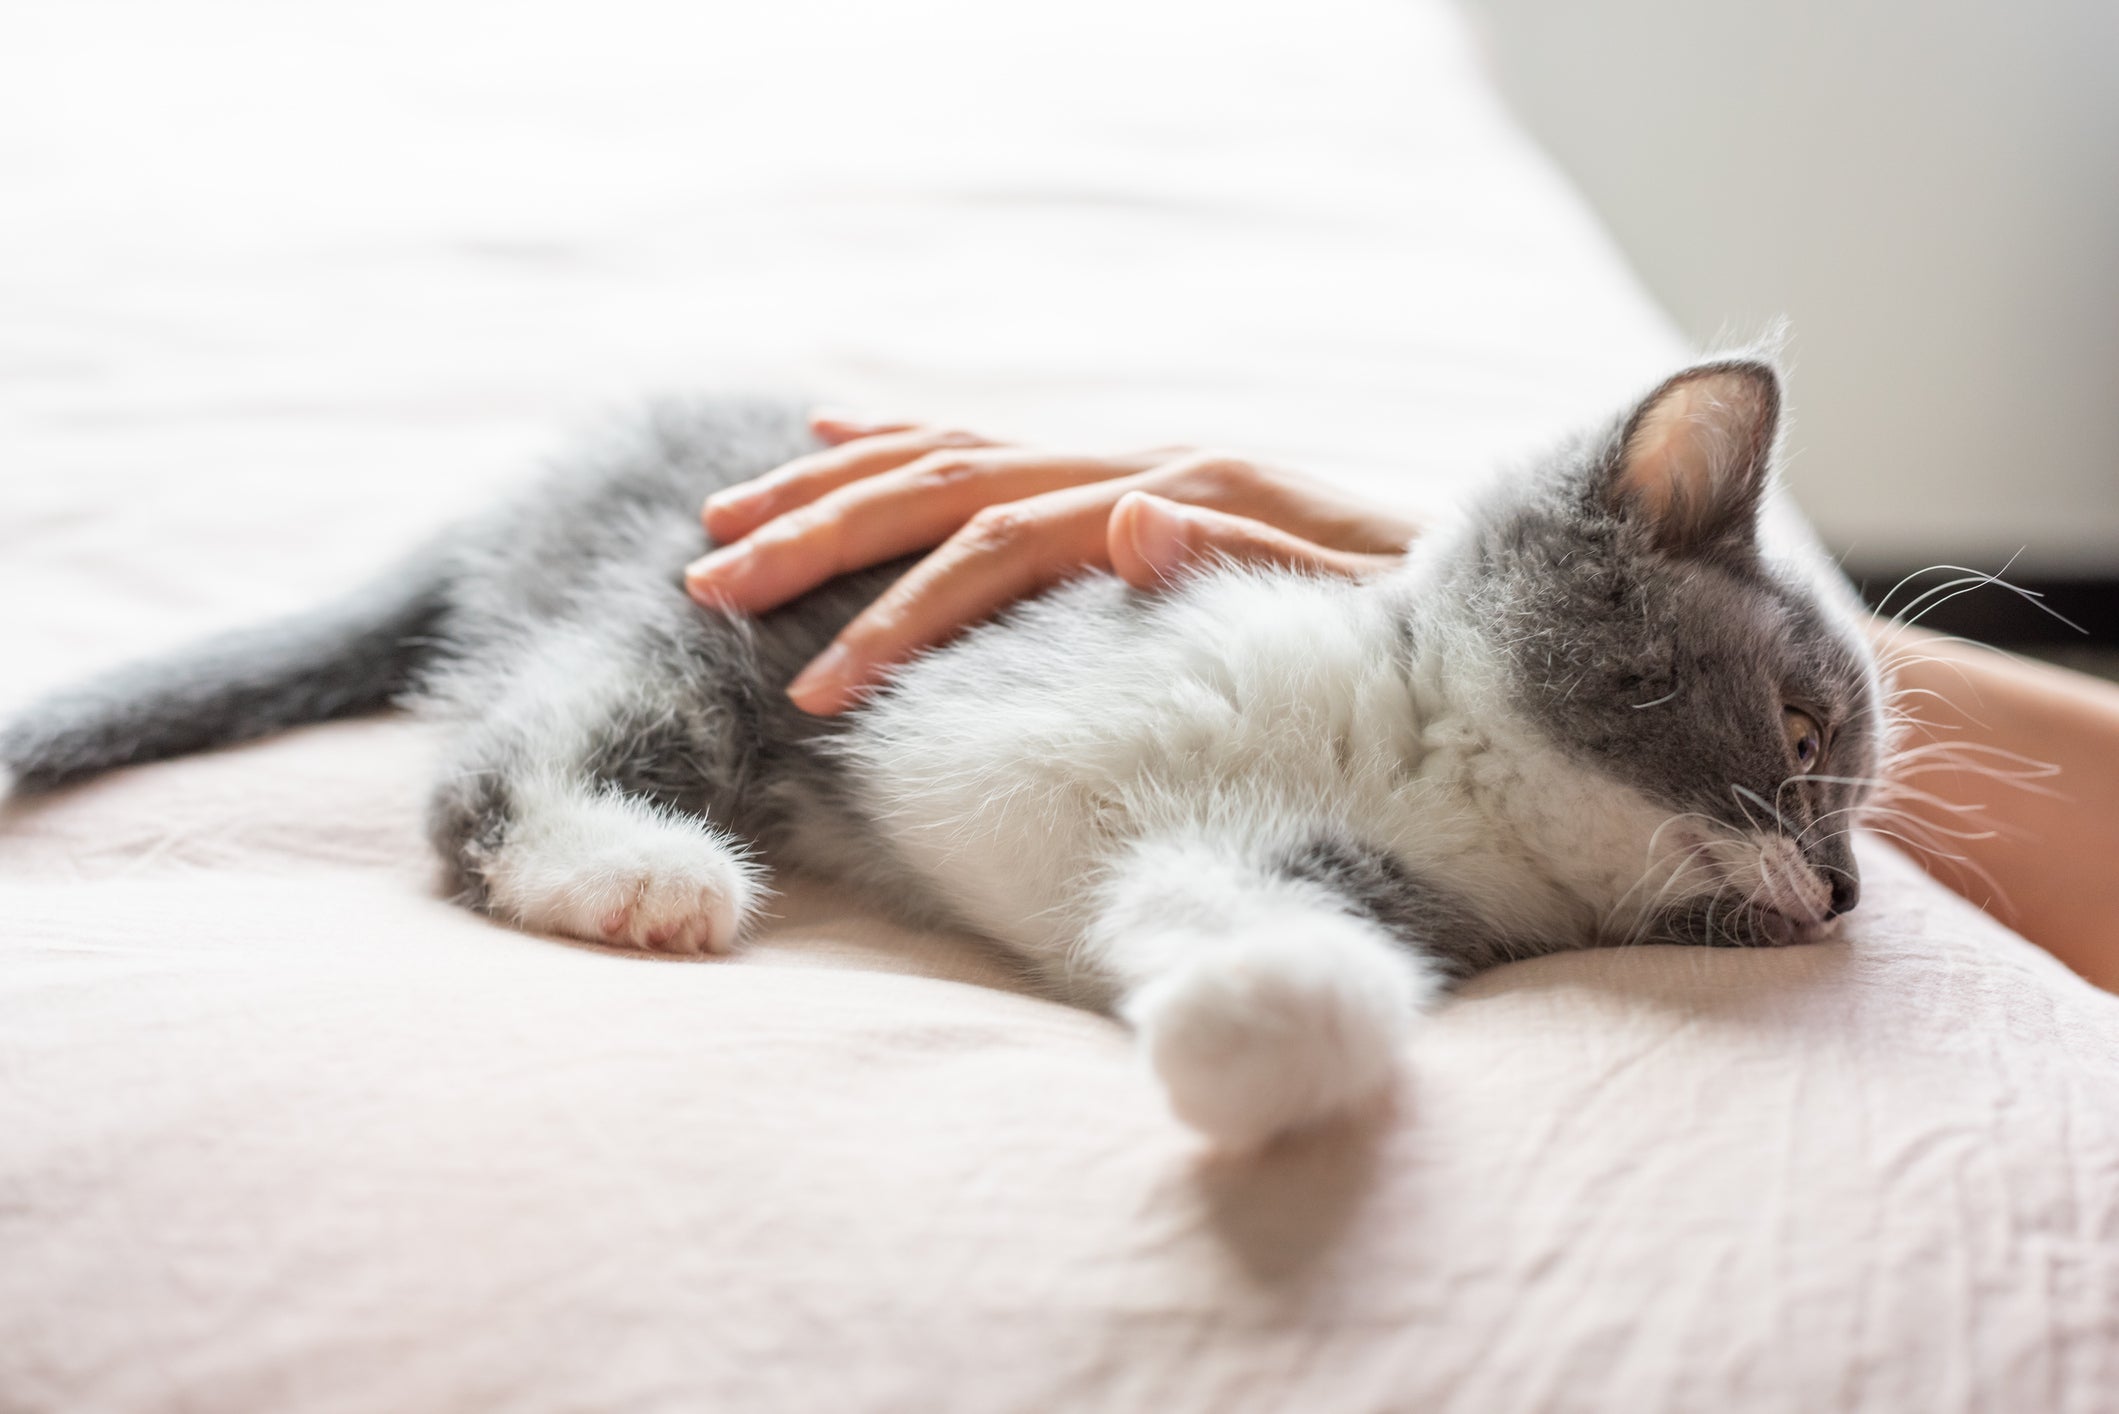 Gato filhote cinza e branco deitado em cama recebendo carinho de mão humana